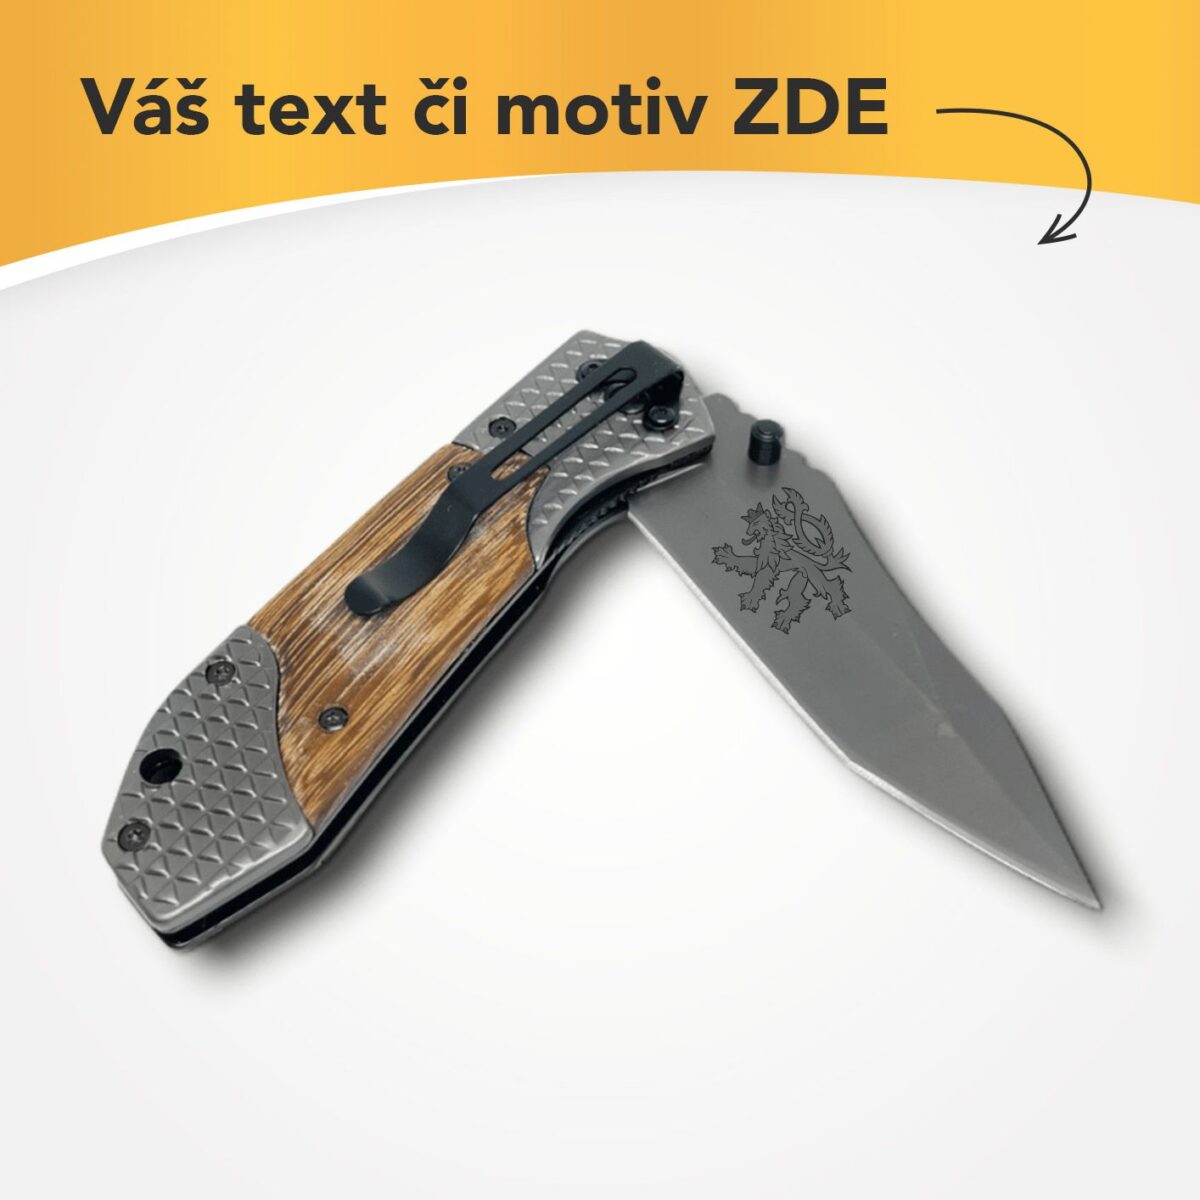 Kapesní nůž zavírací kombinace dřevo kov s vlastním textem nebo logem – 41131